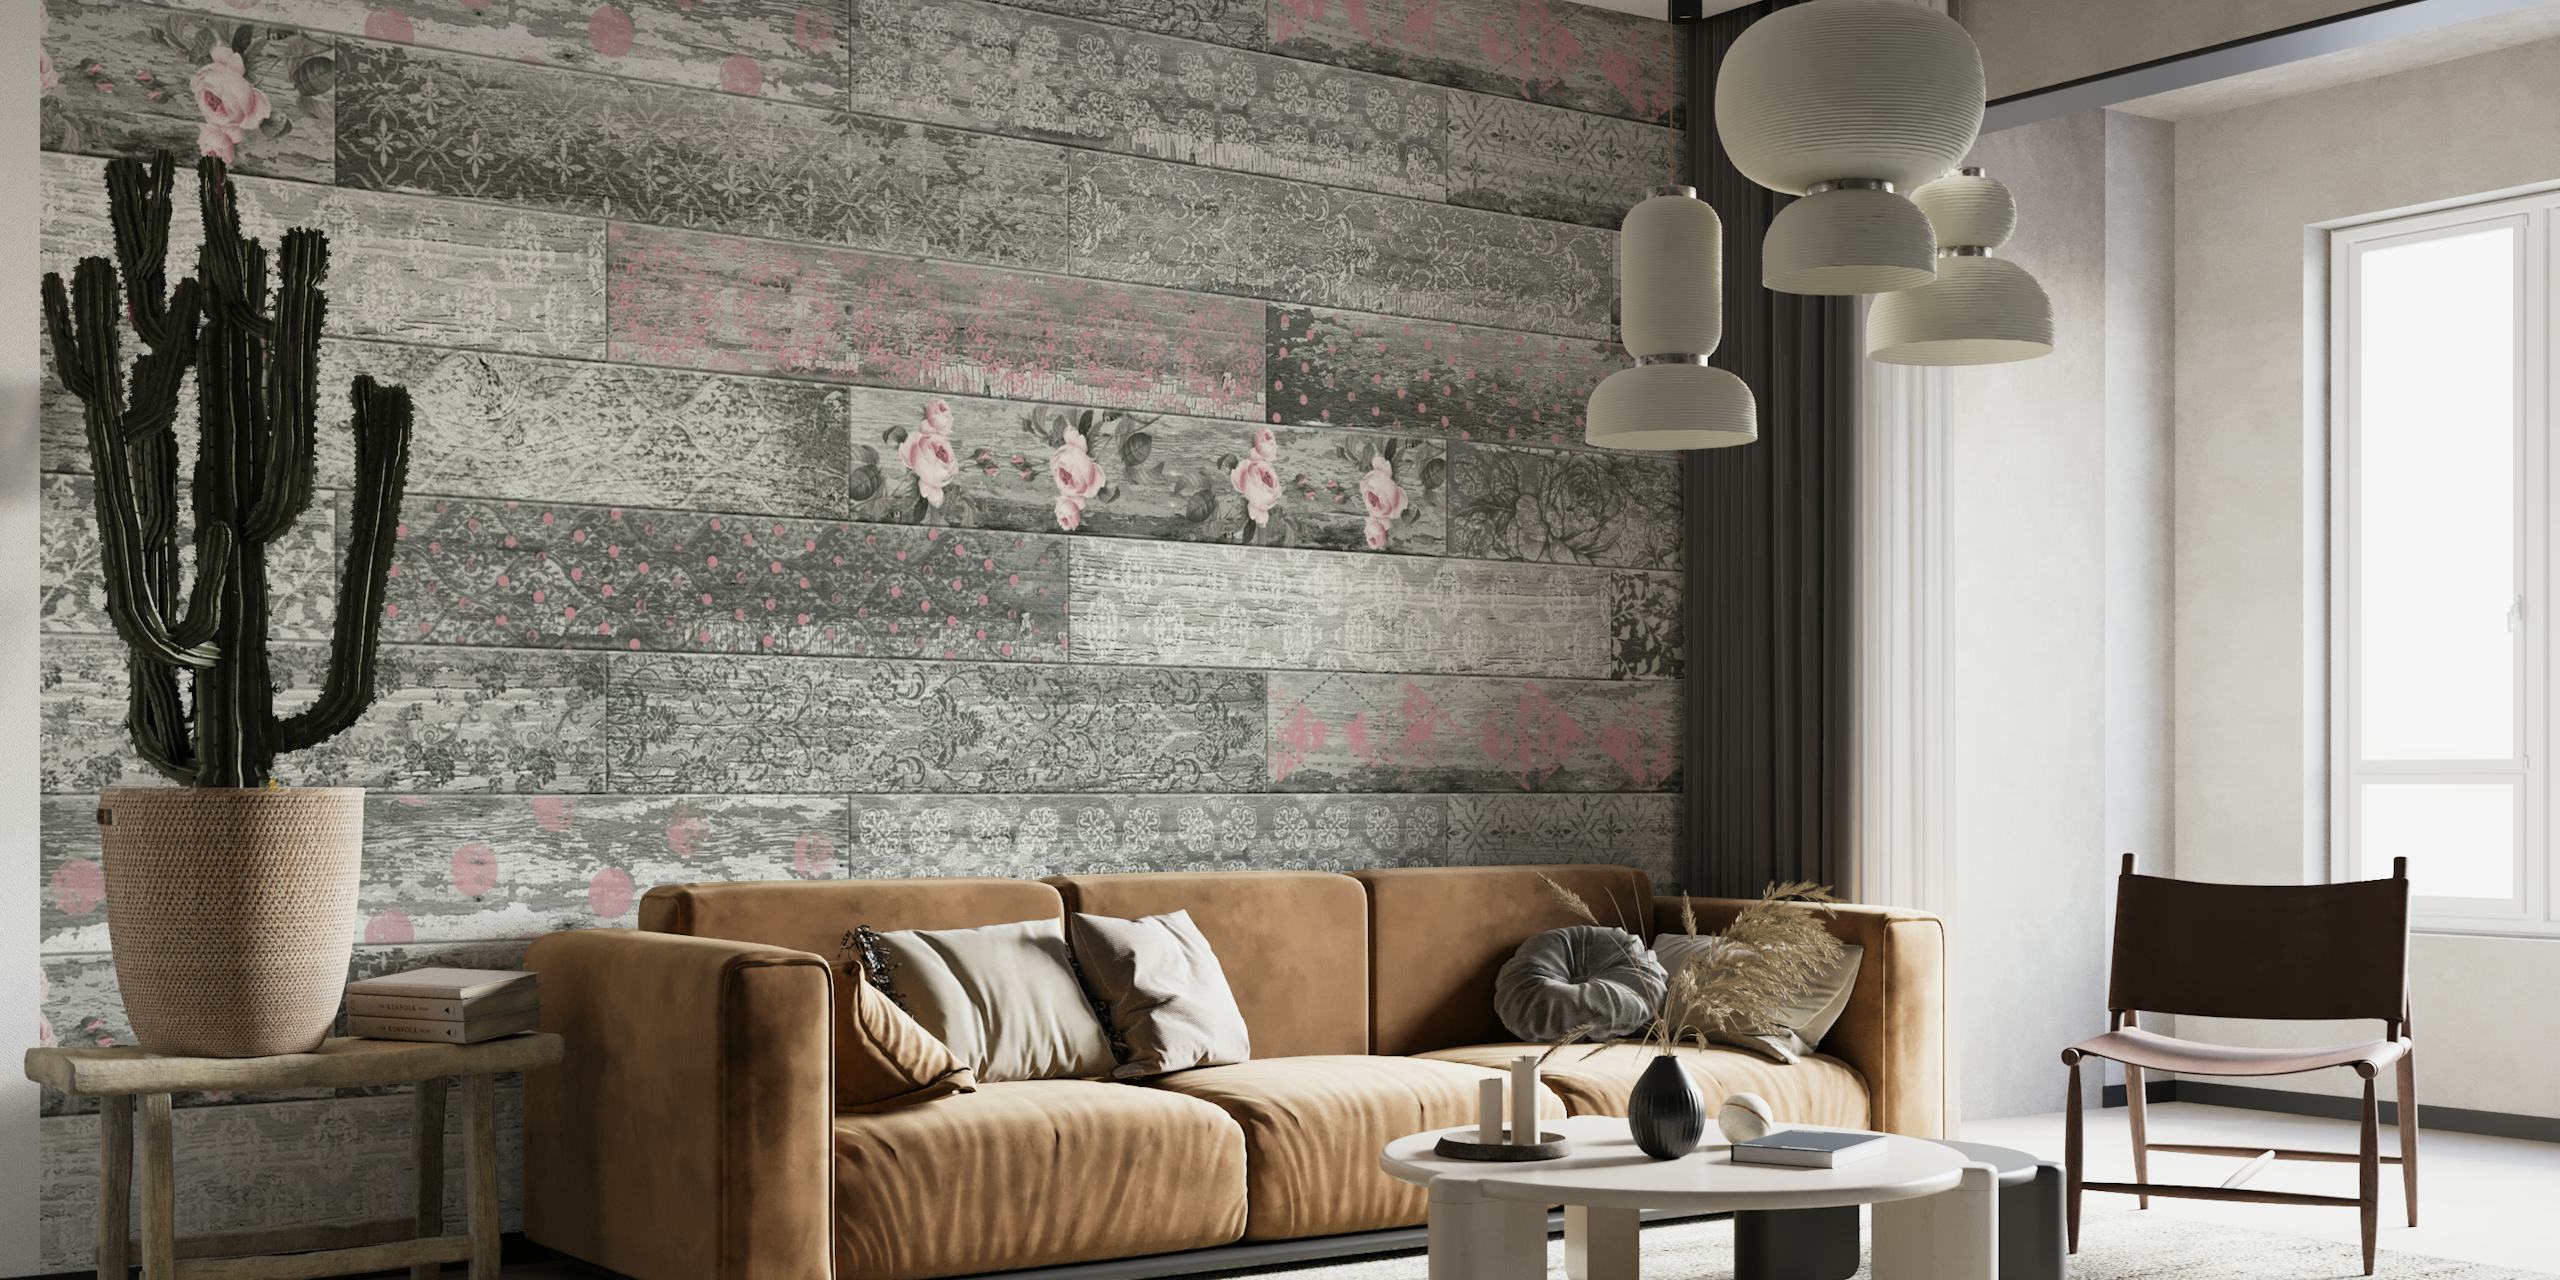 Vintage Wood Tiles Pink Grey zidna slika s iluzijom teksturiranih drvenih ploča u nijansama ružičaste i sive